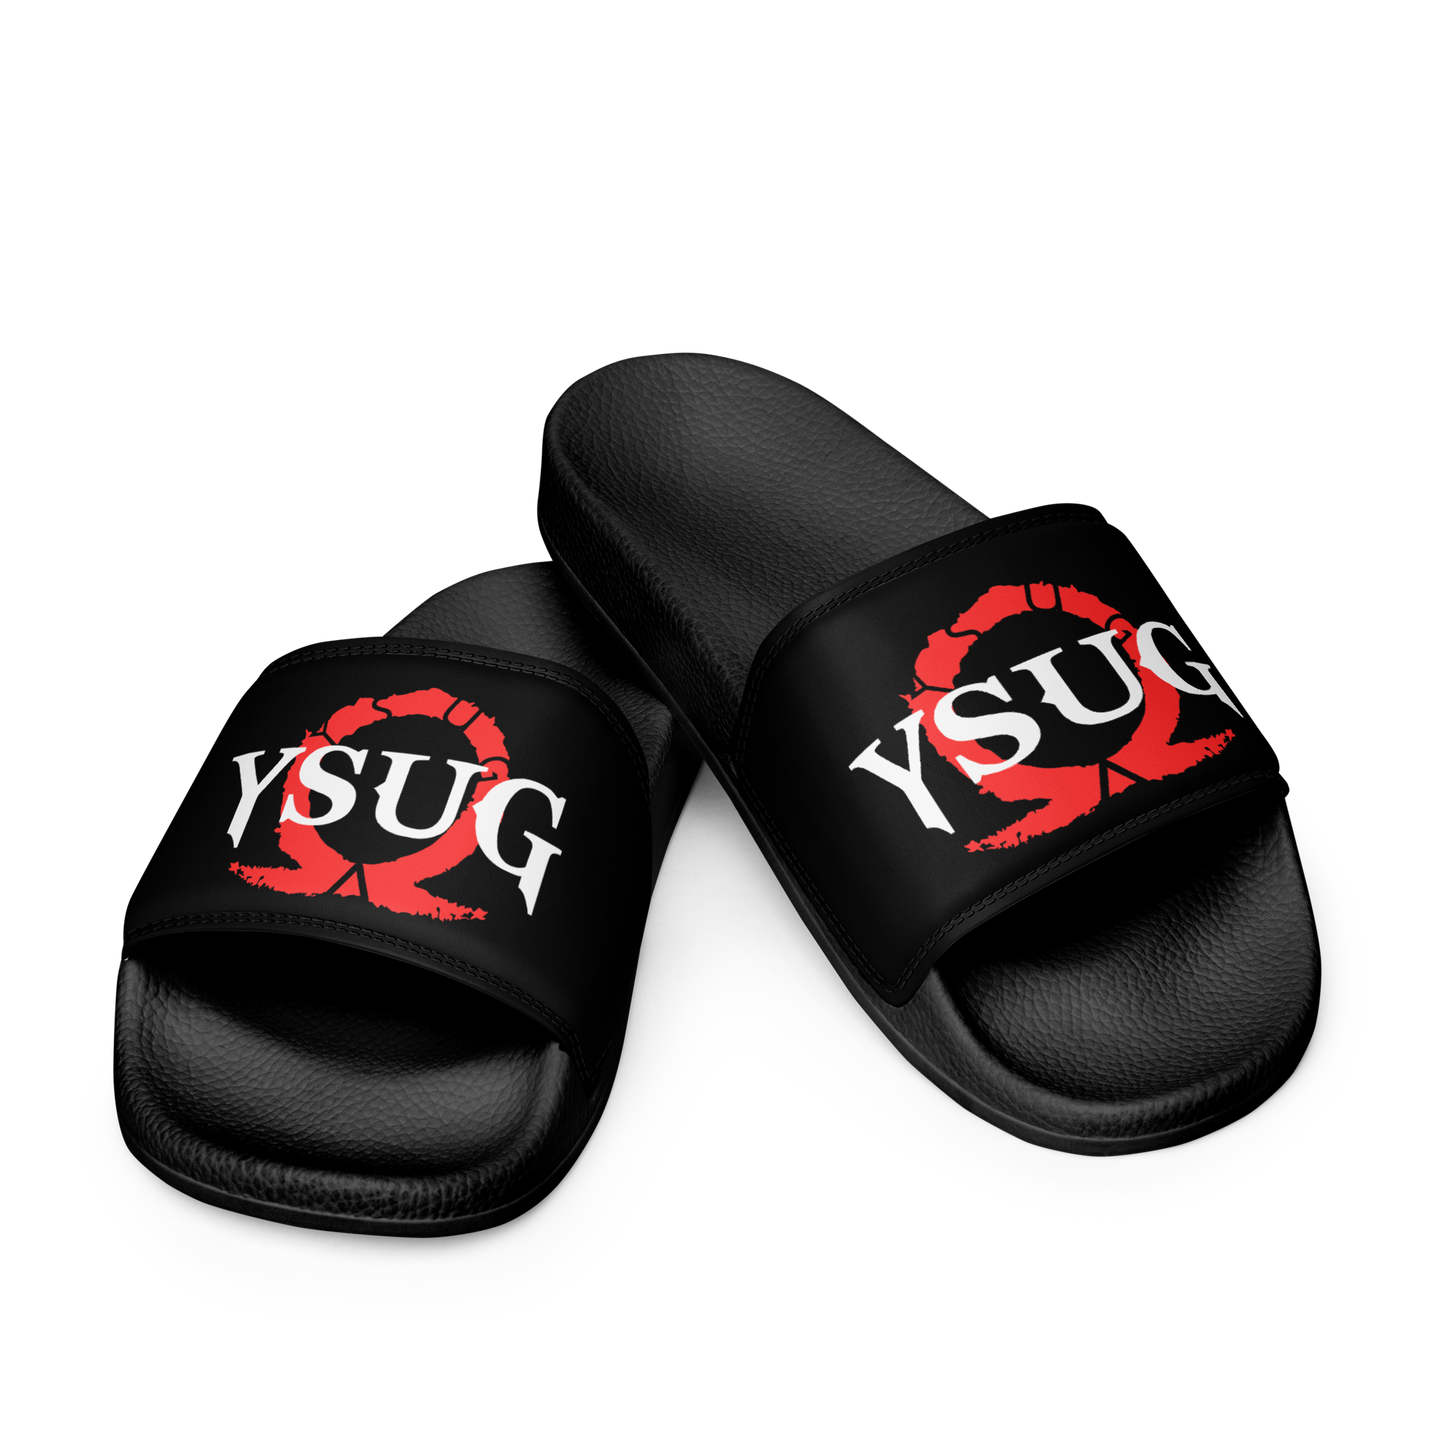 YSUG Olympus - Men’s slides